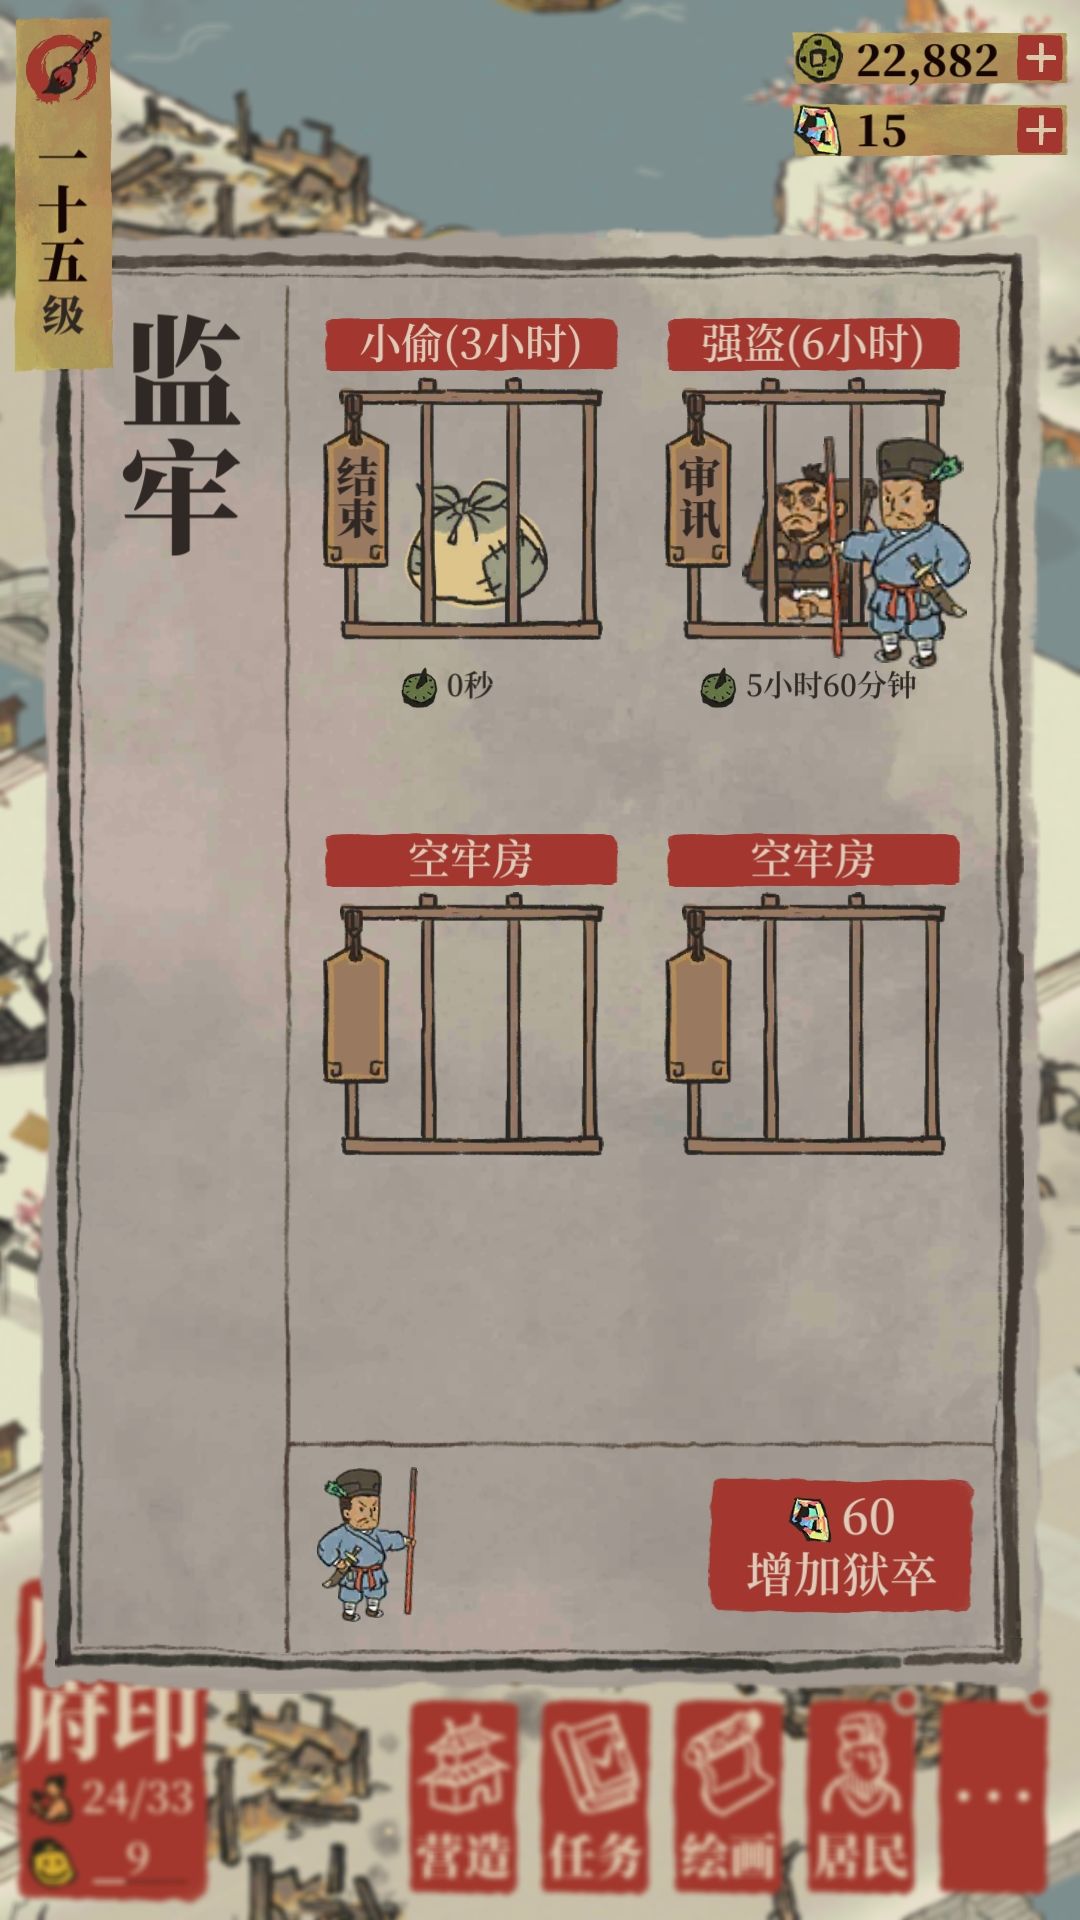 《江南百景图》监牢的用法